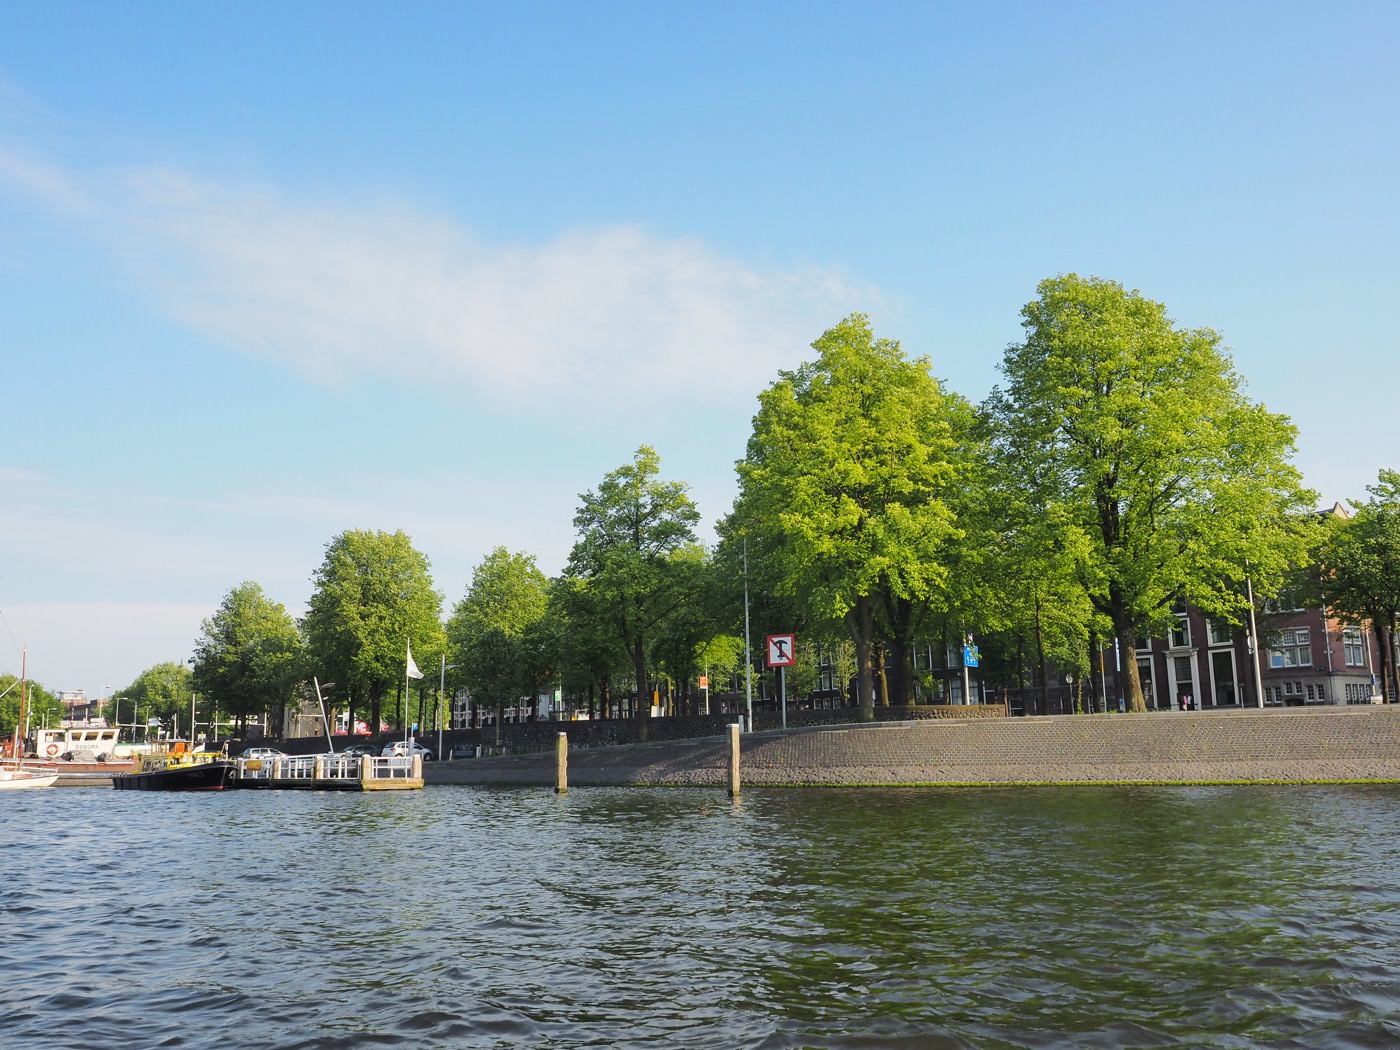 阿姆斯特丹景點 Lovers Canal Cruises 中文導覽 一小時運河遊船 - 一口冒險 Bitesized Adventure